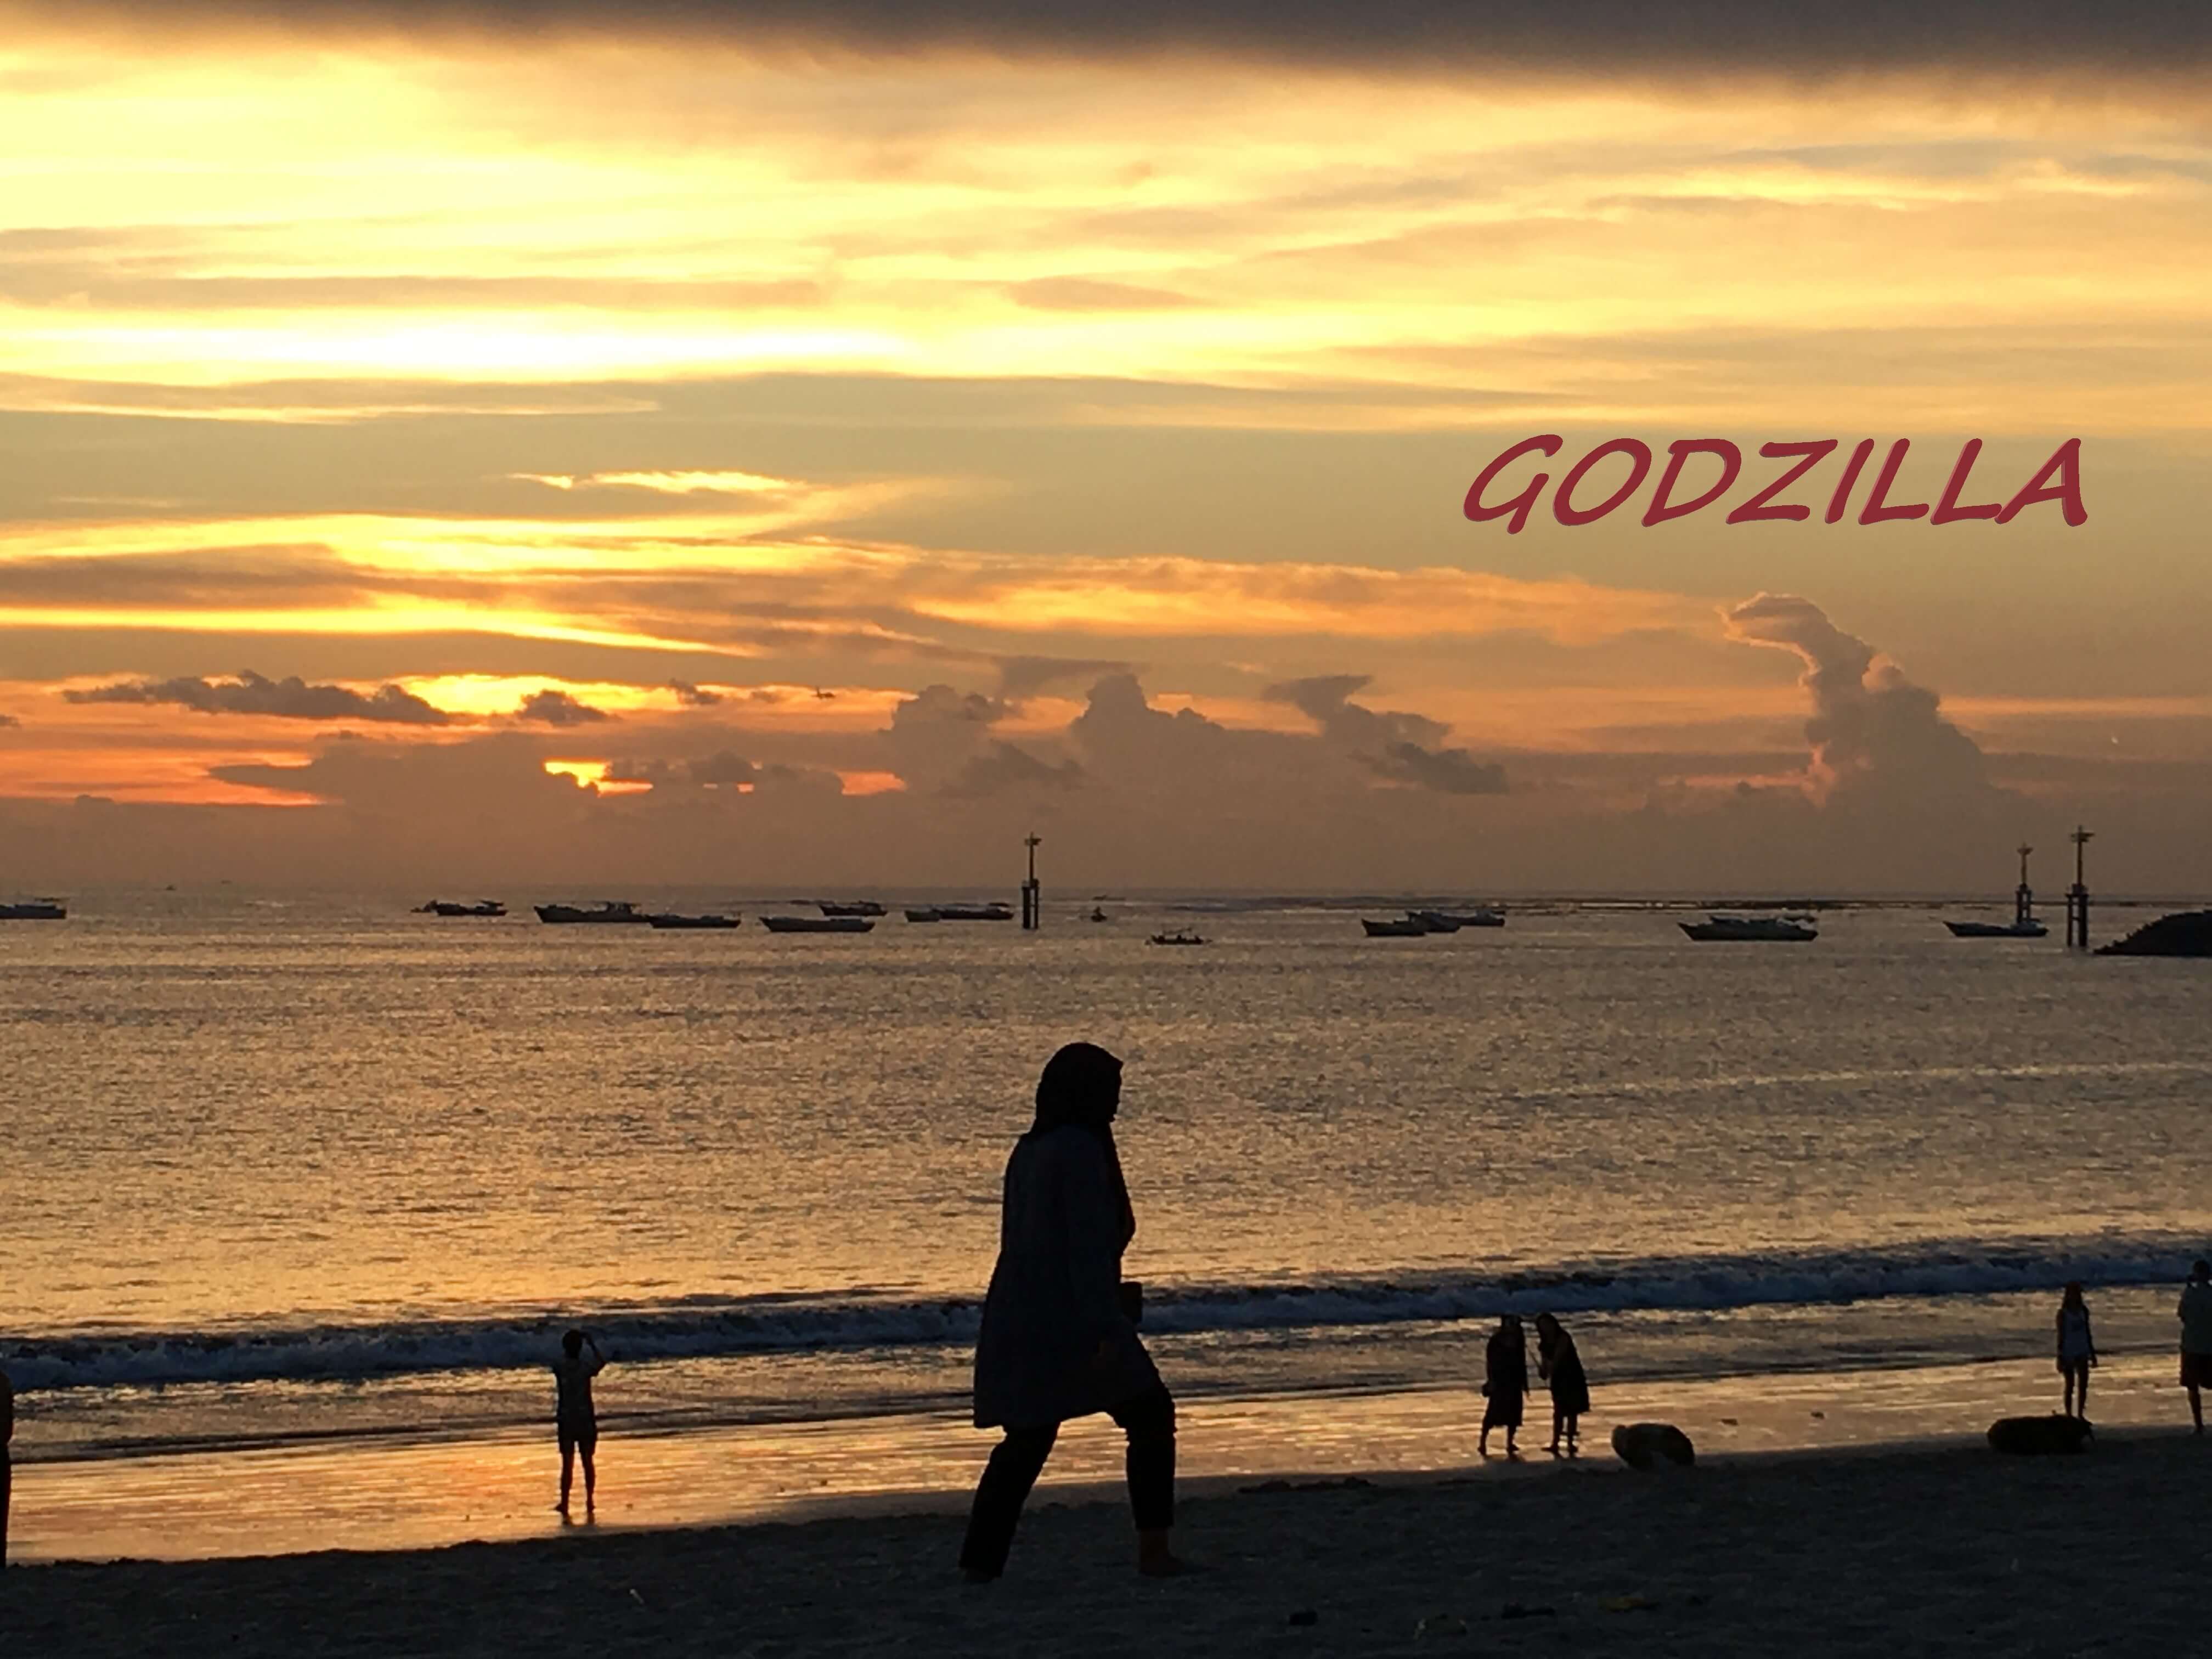 【格安・海外】ゴジラ/GODZILLAが出現したバリの海岸に行ってみよう